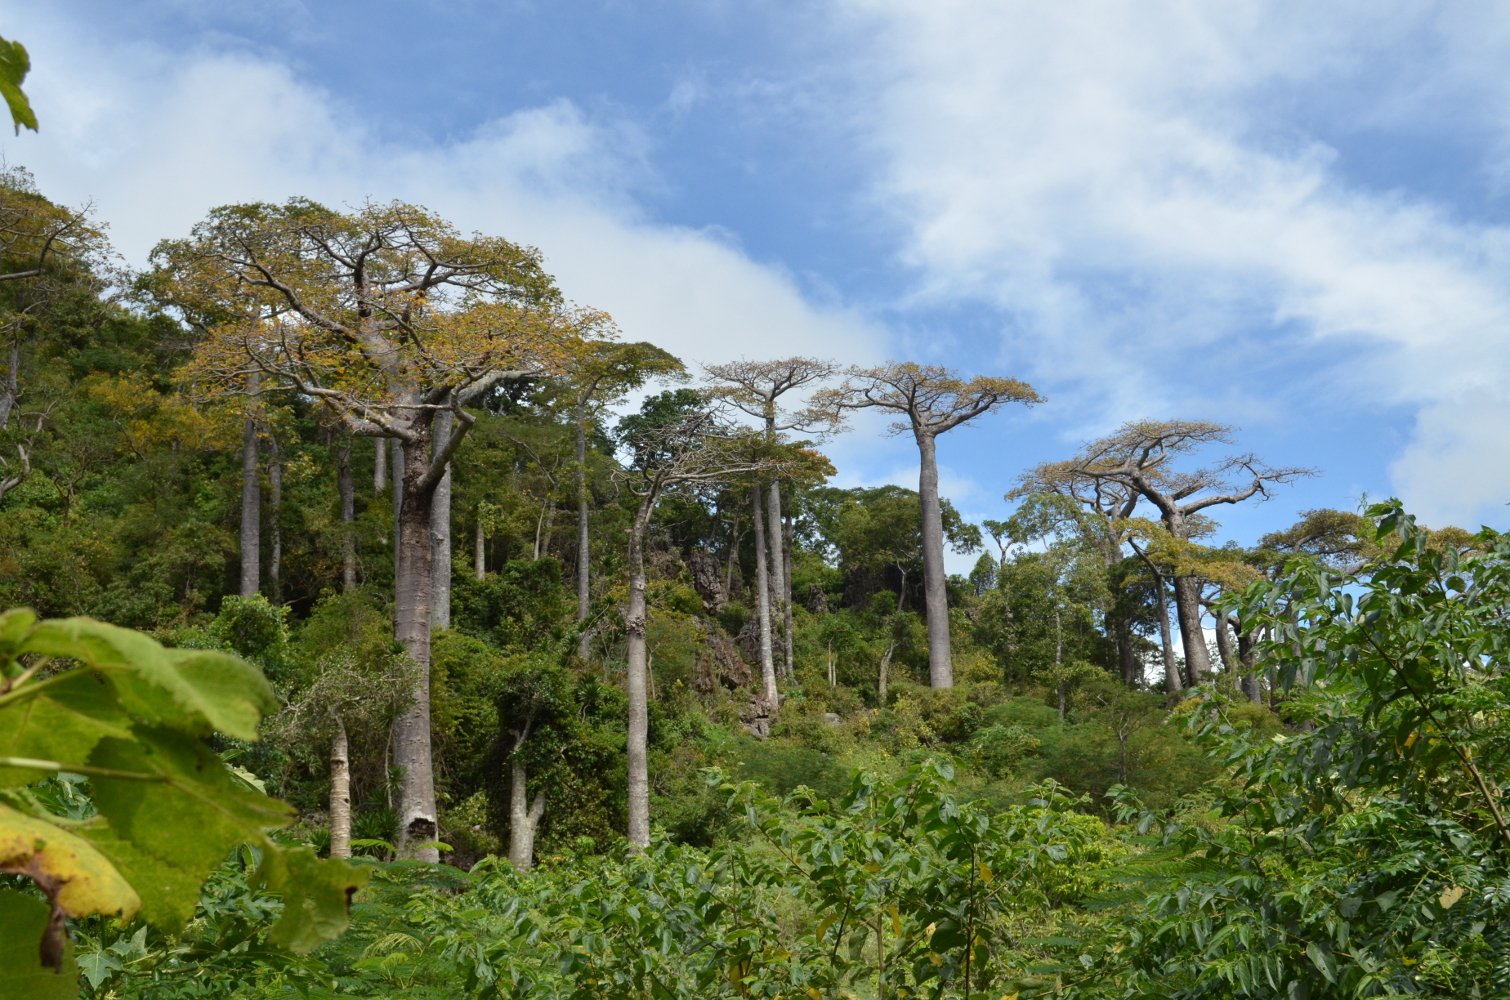 Population de baobabs de l’espèce Adansonia suarezensis sur le site de la Montagne des Français au nord de Madagascar. Cette espèce est fortement menacée par la perte d’habitat associée aux changements climatiques.